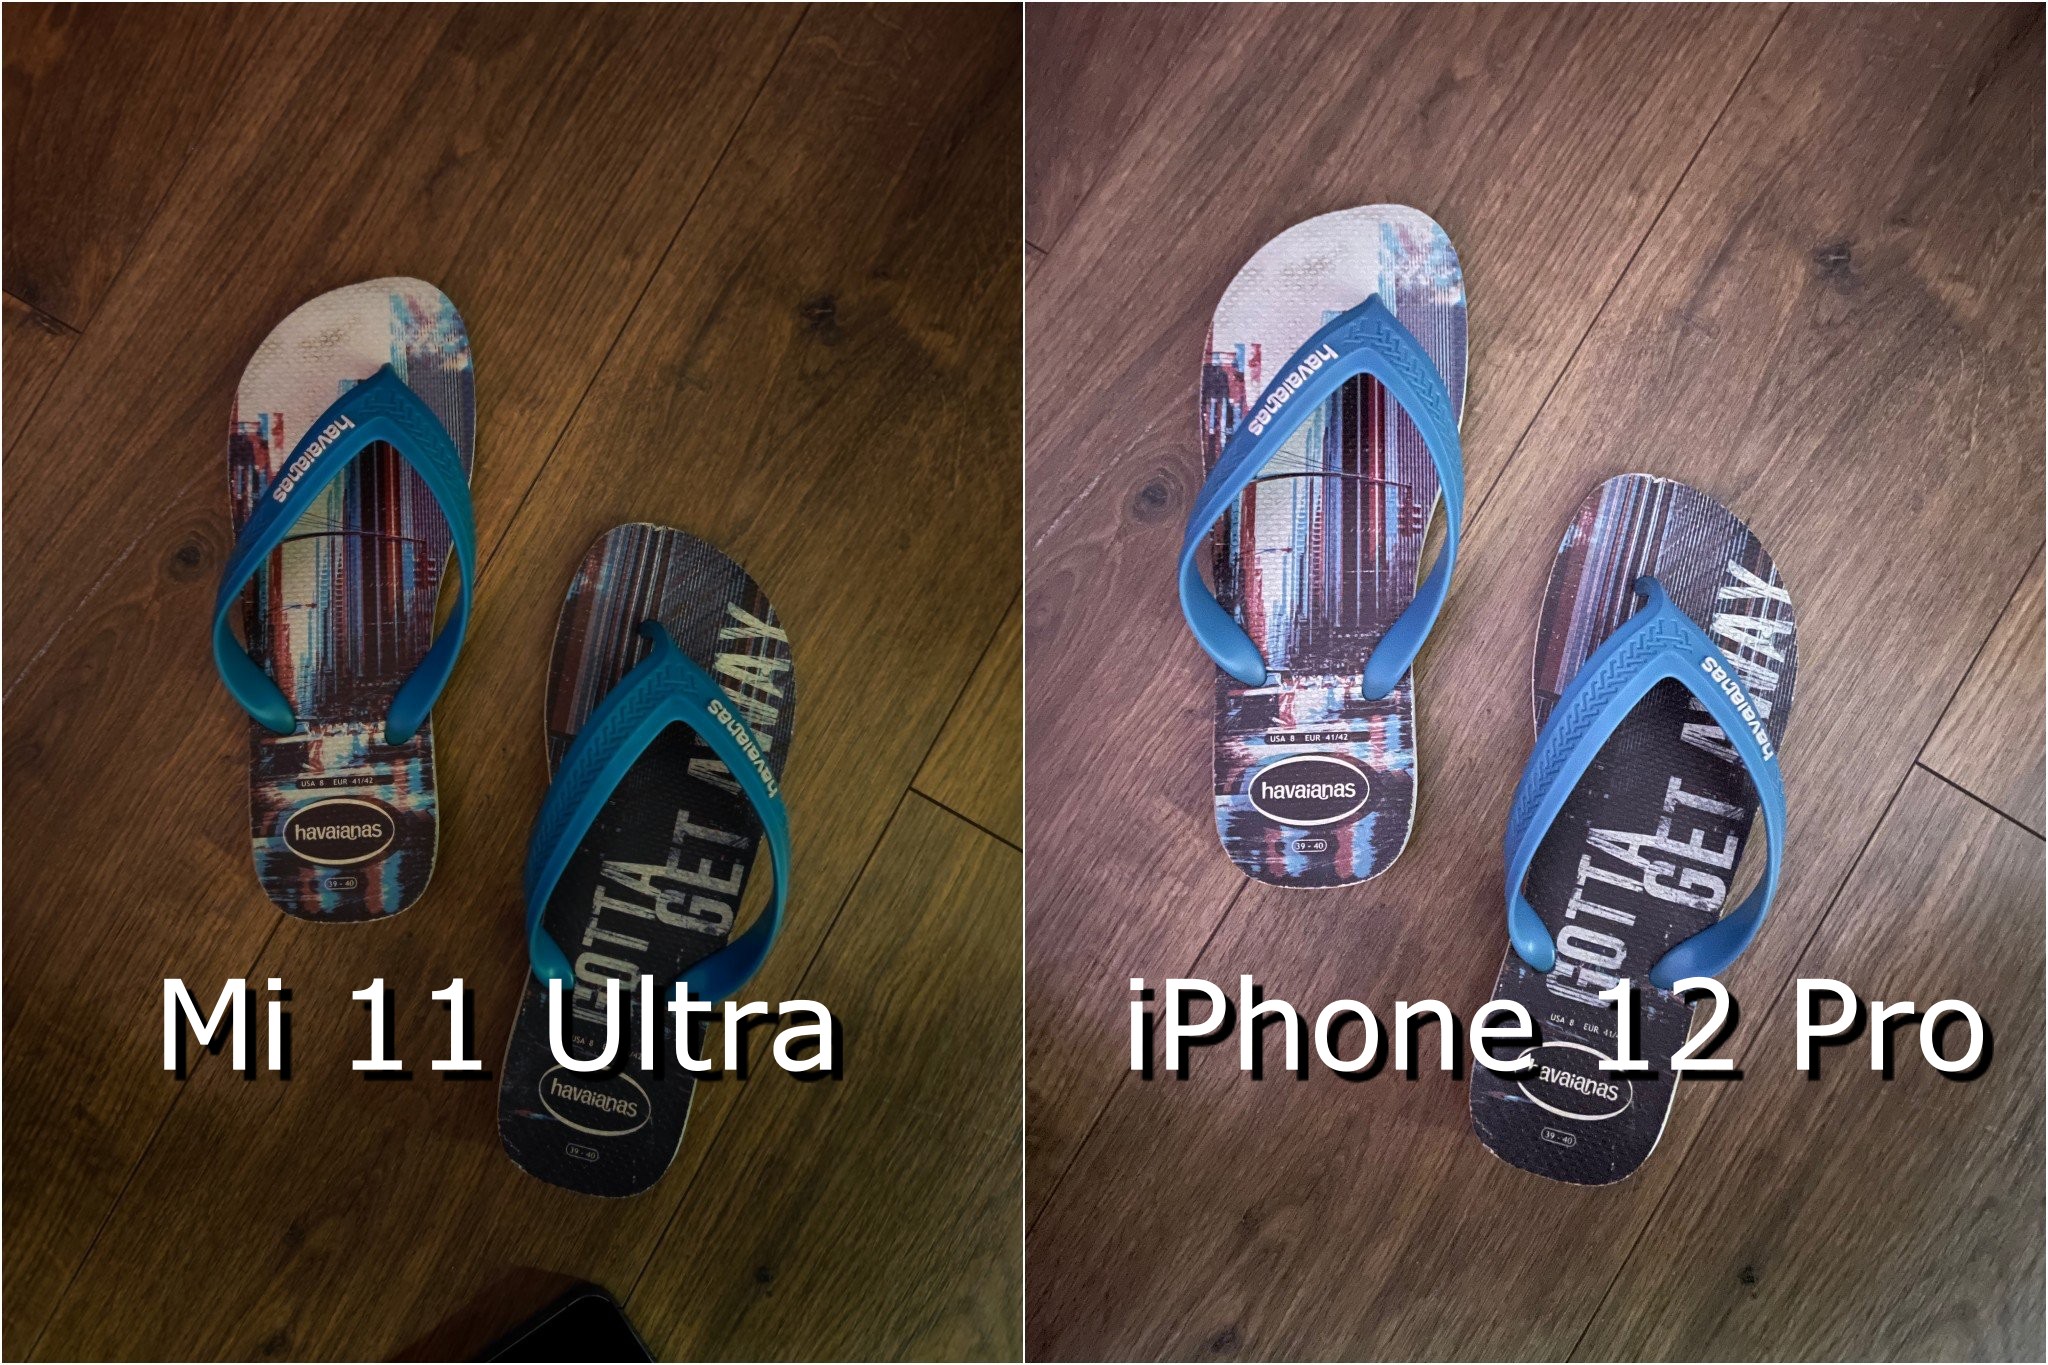 Anh em đoán toàn sai, Mi 11 Ultra bên trái, iPhone 12 Pro bên phải